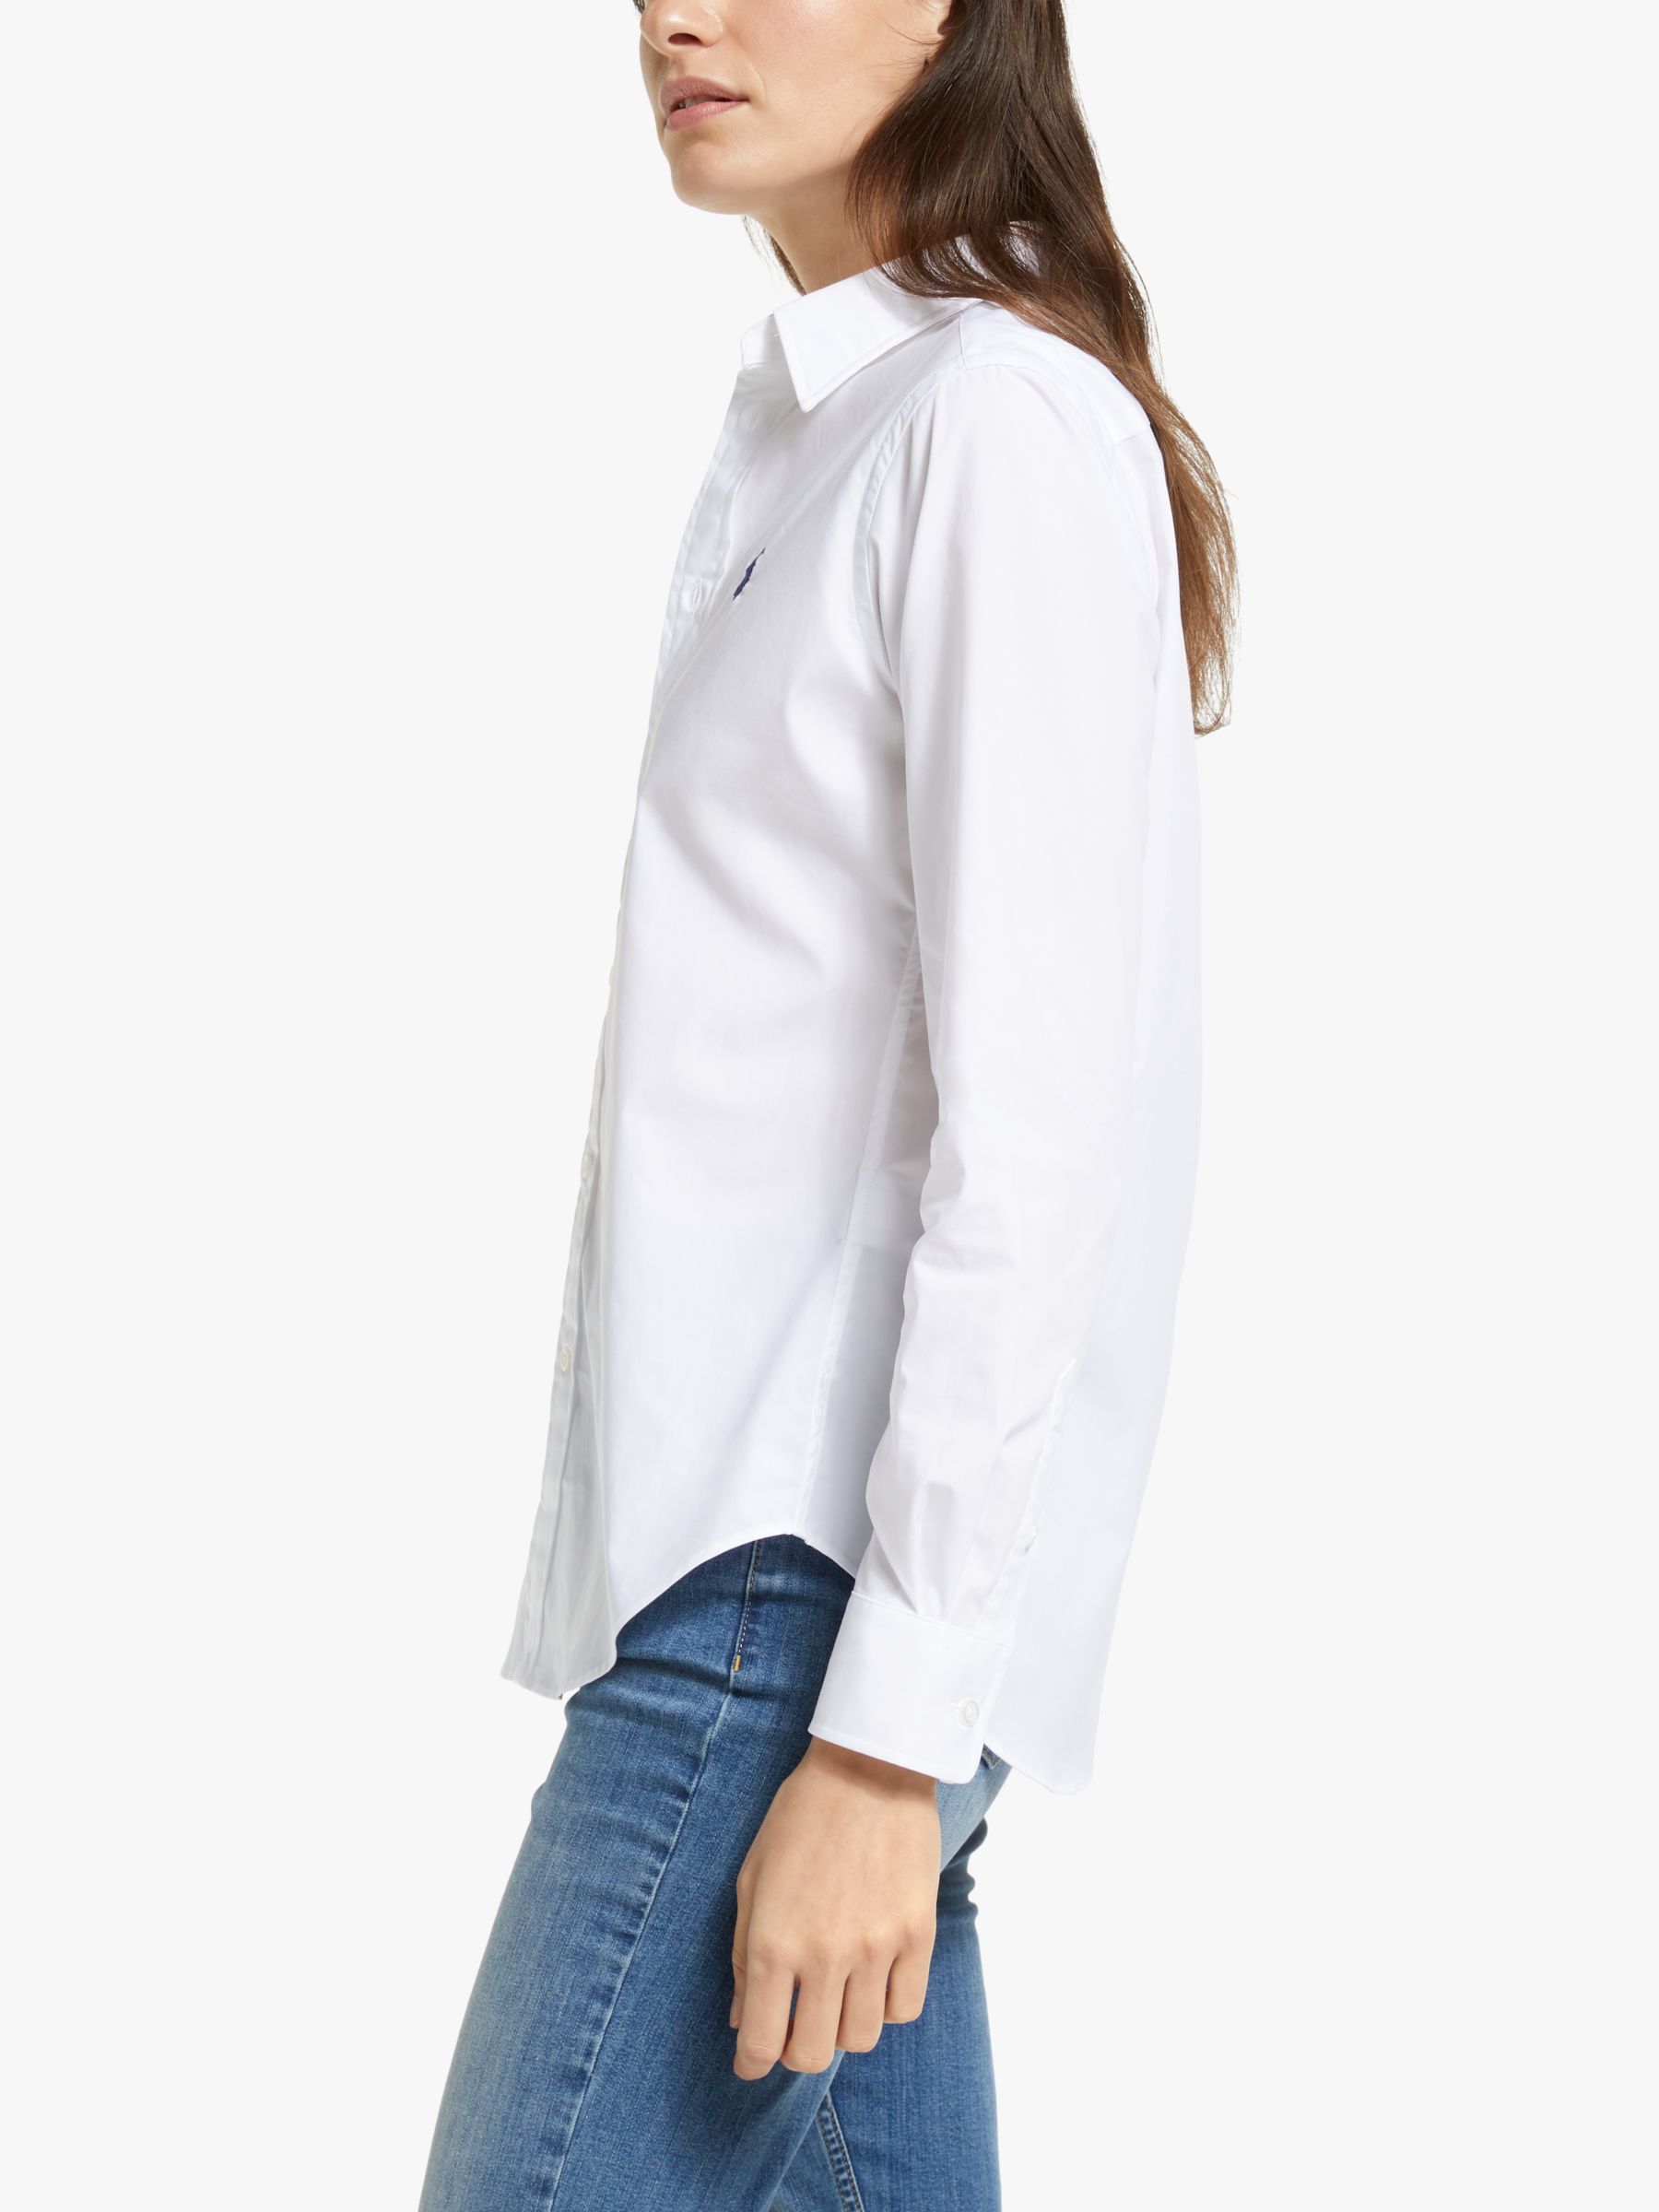 Polo Ralph Lauren Georgia Shirt, White, 8